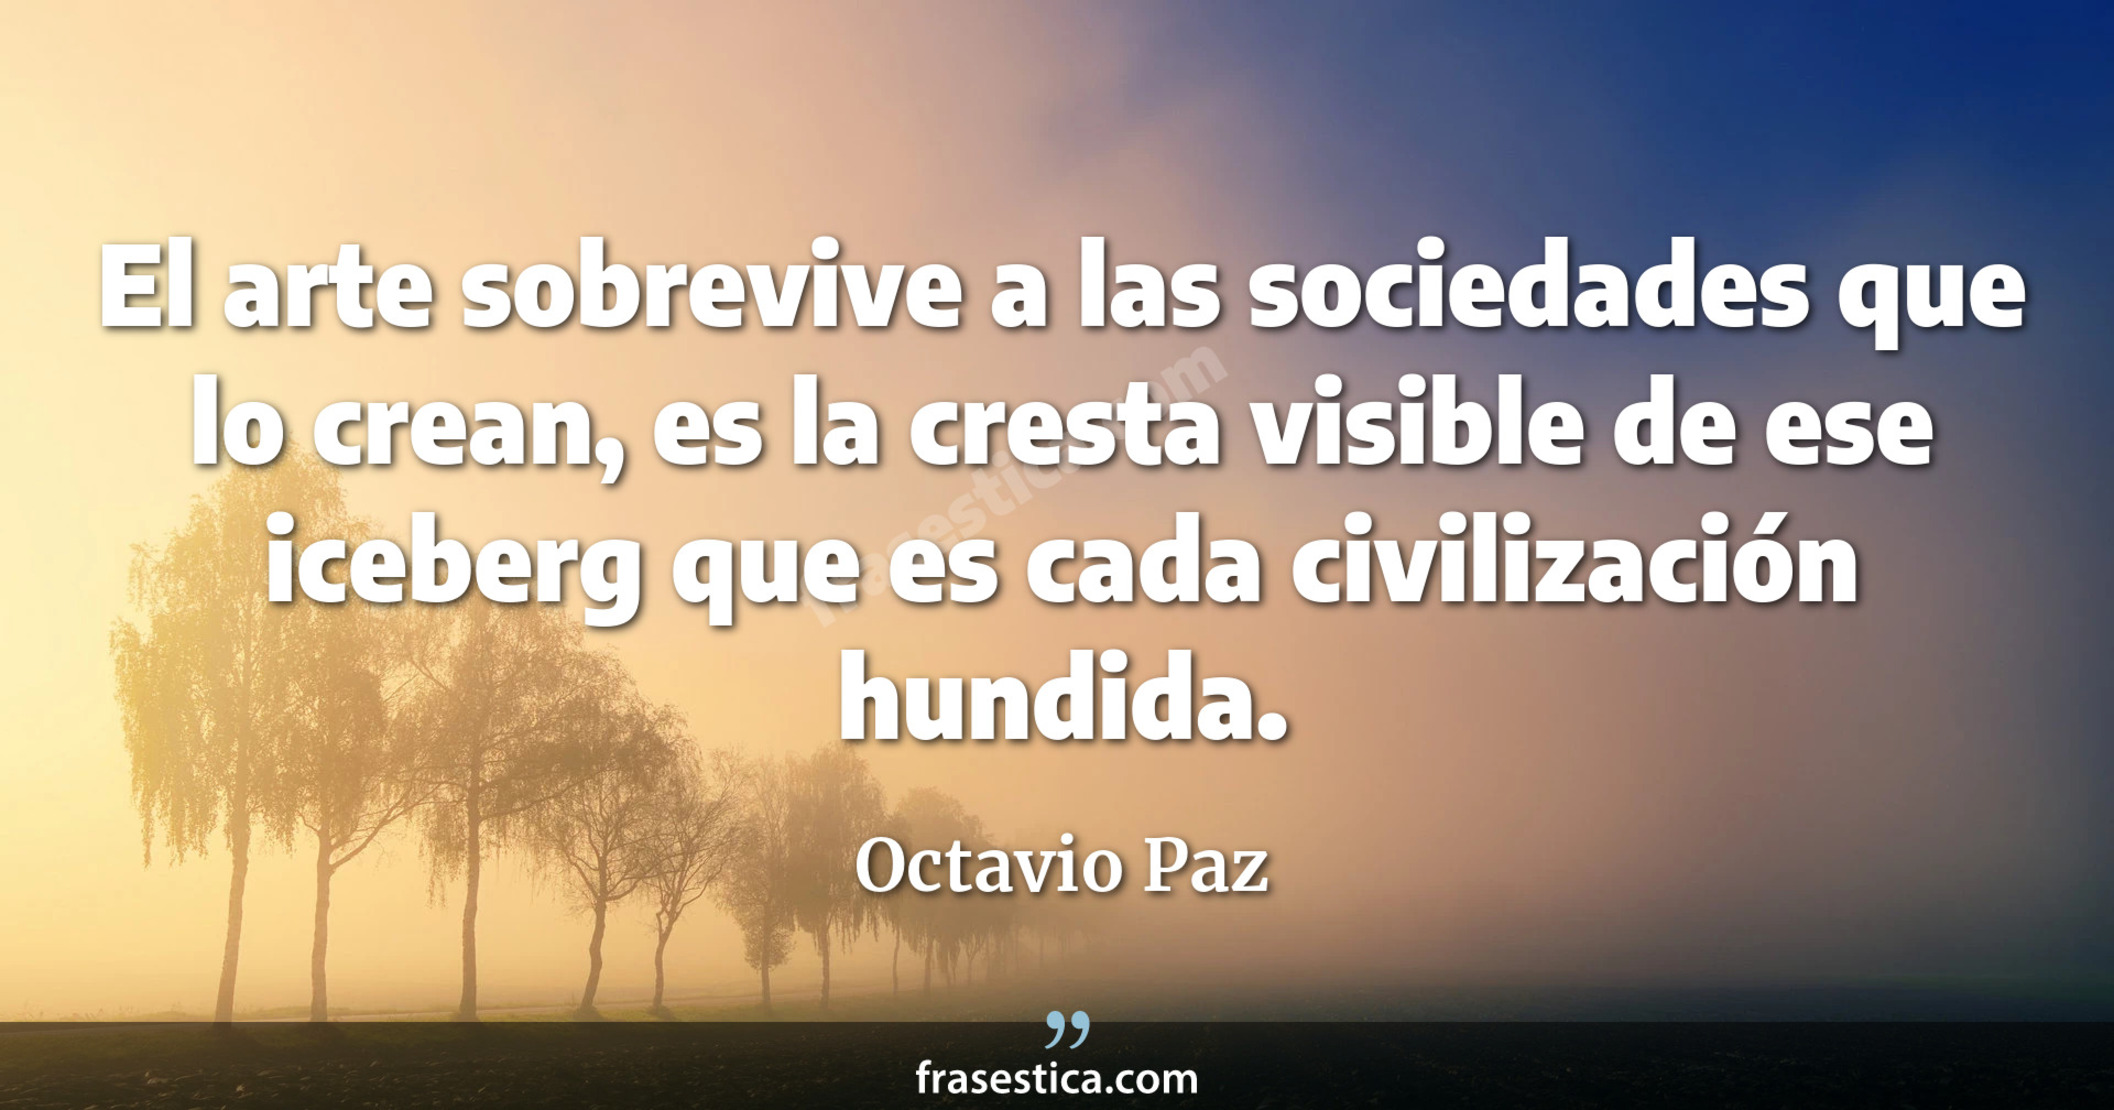 El arte sobrevive a las sociedades que lo crean, es la cresta visible de ese iceberg que es cada civilización hundida. - Octavio Paz